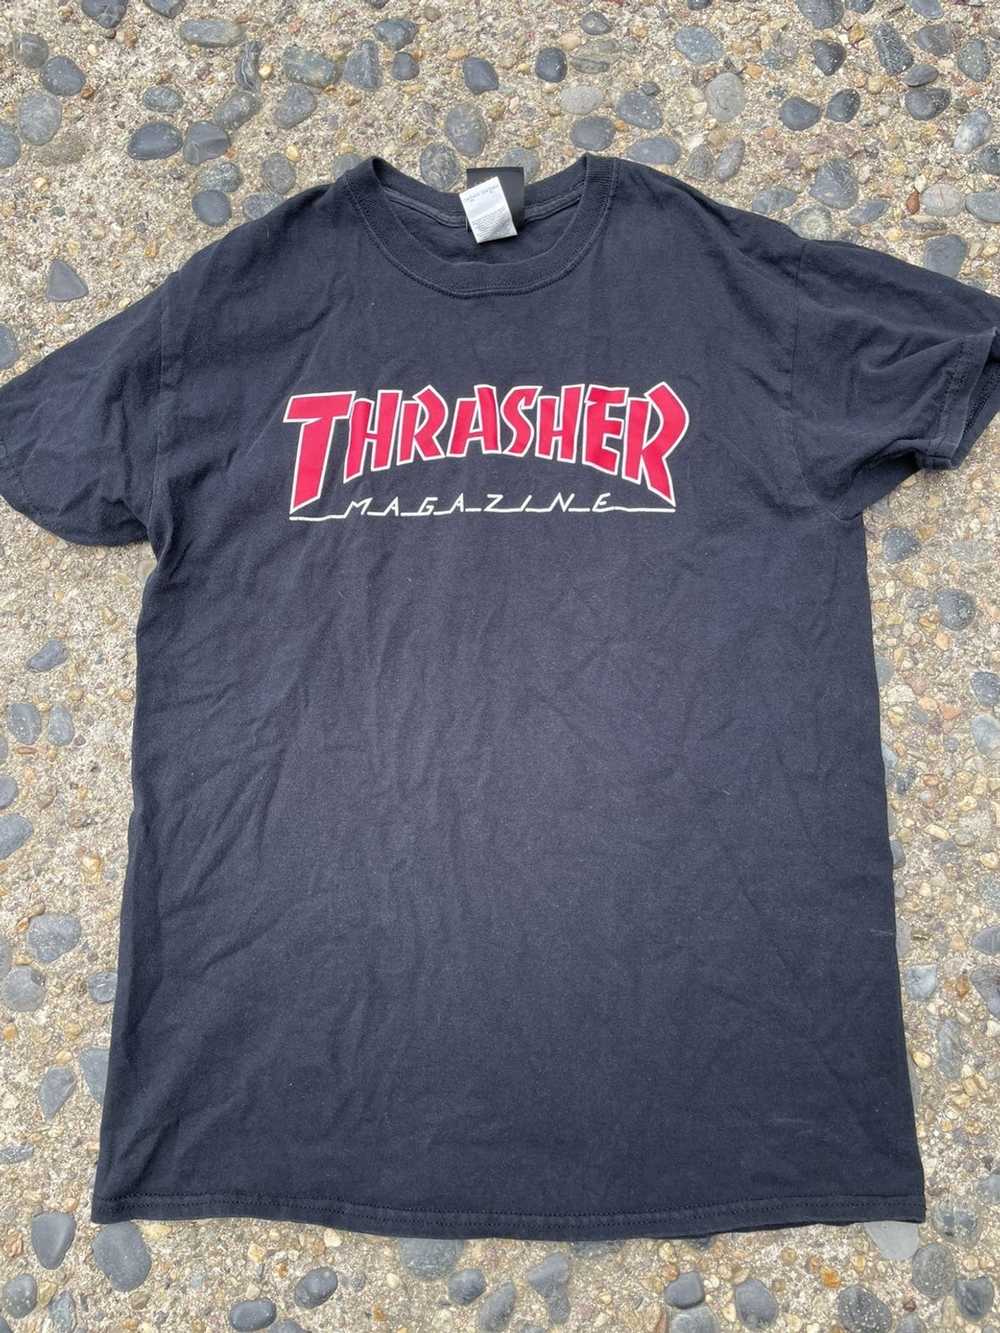 Thrasher Thrasher magazine - image 1